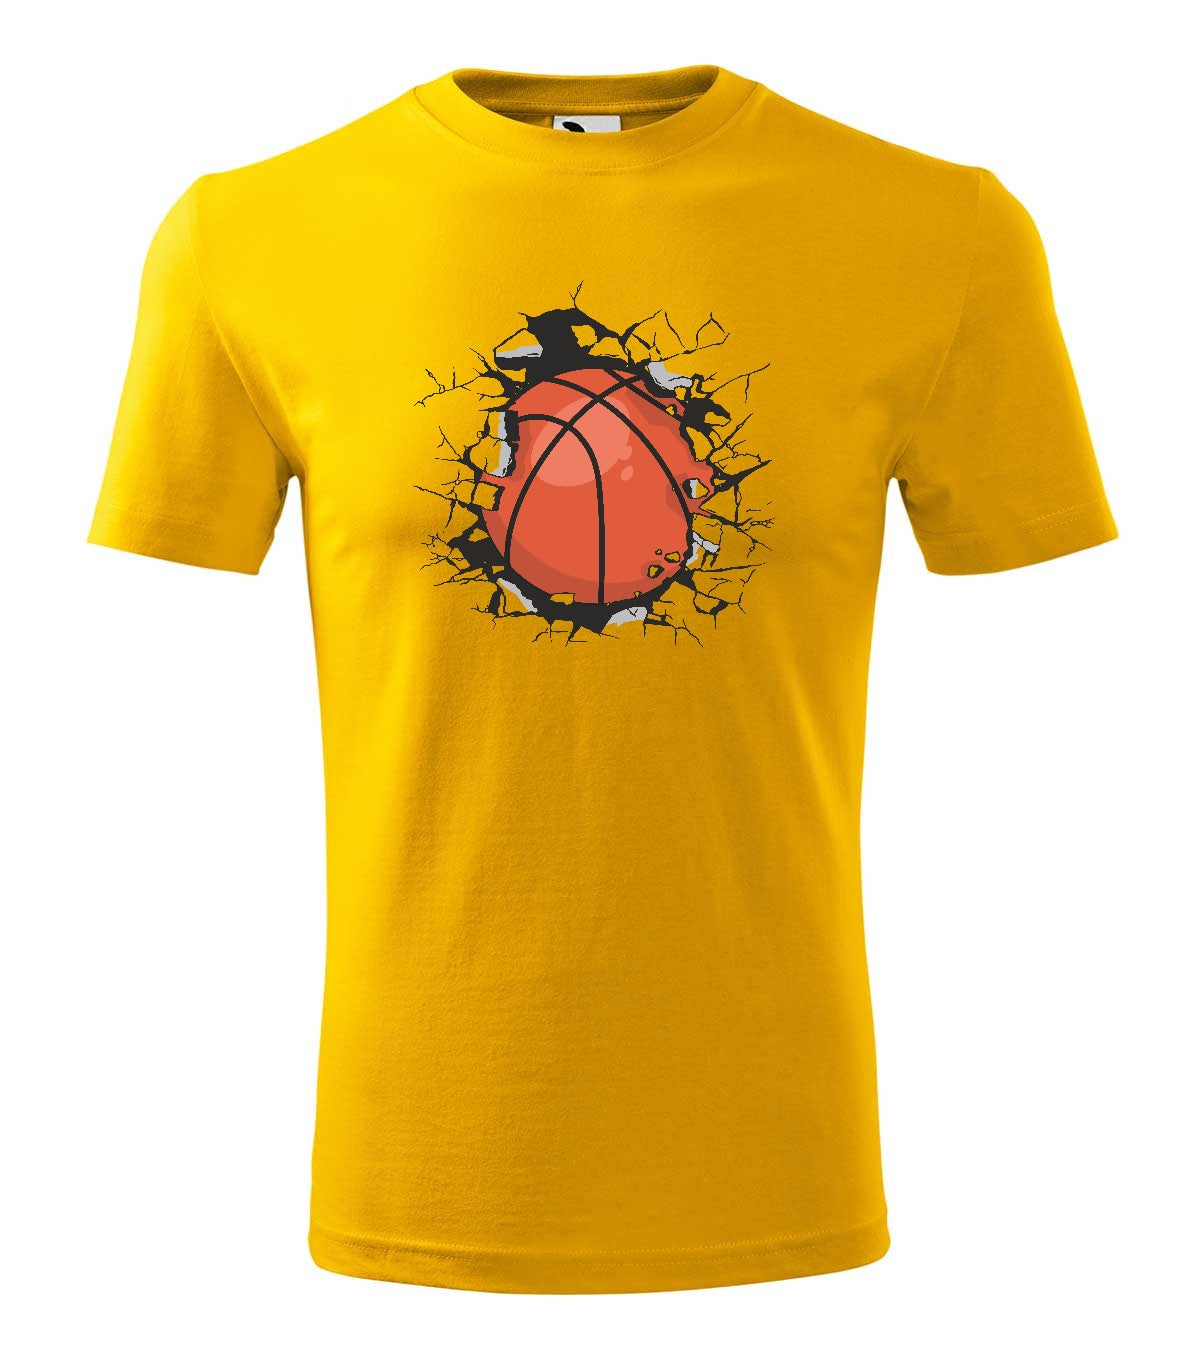 Basketball női póló